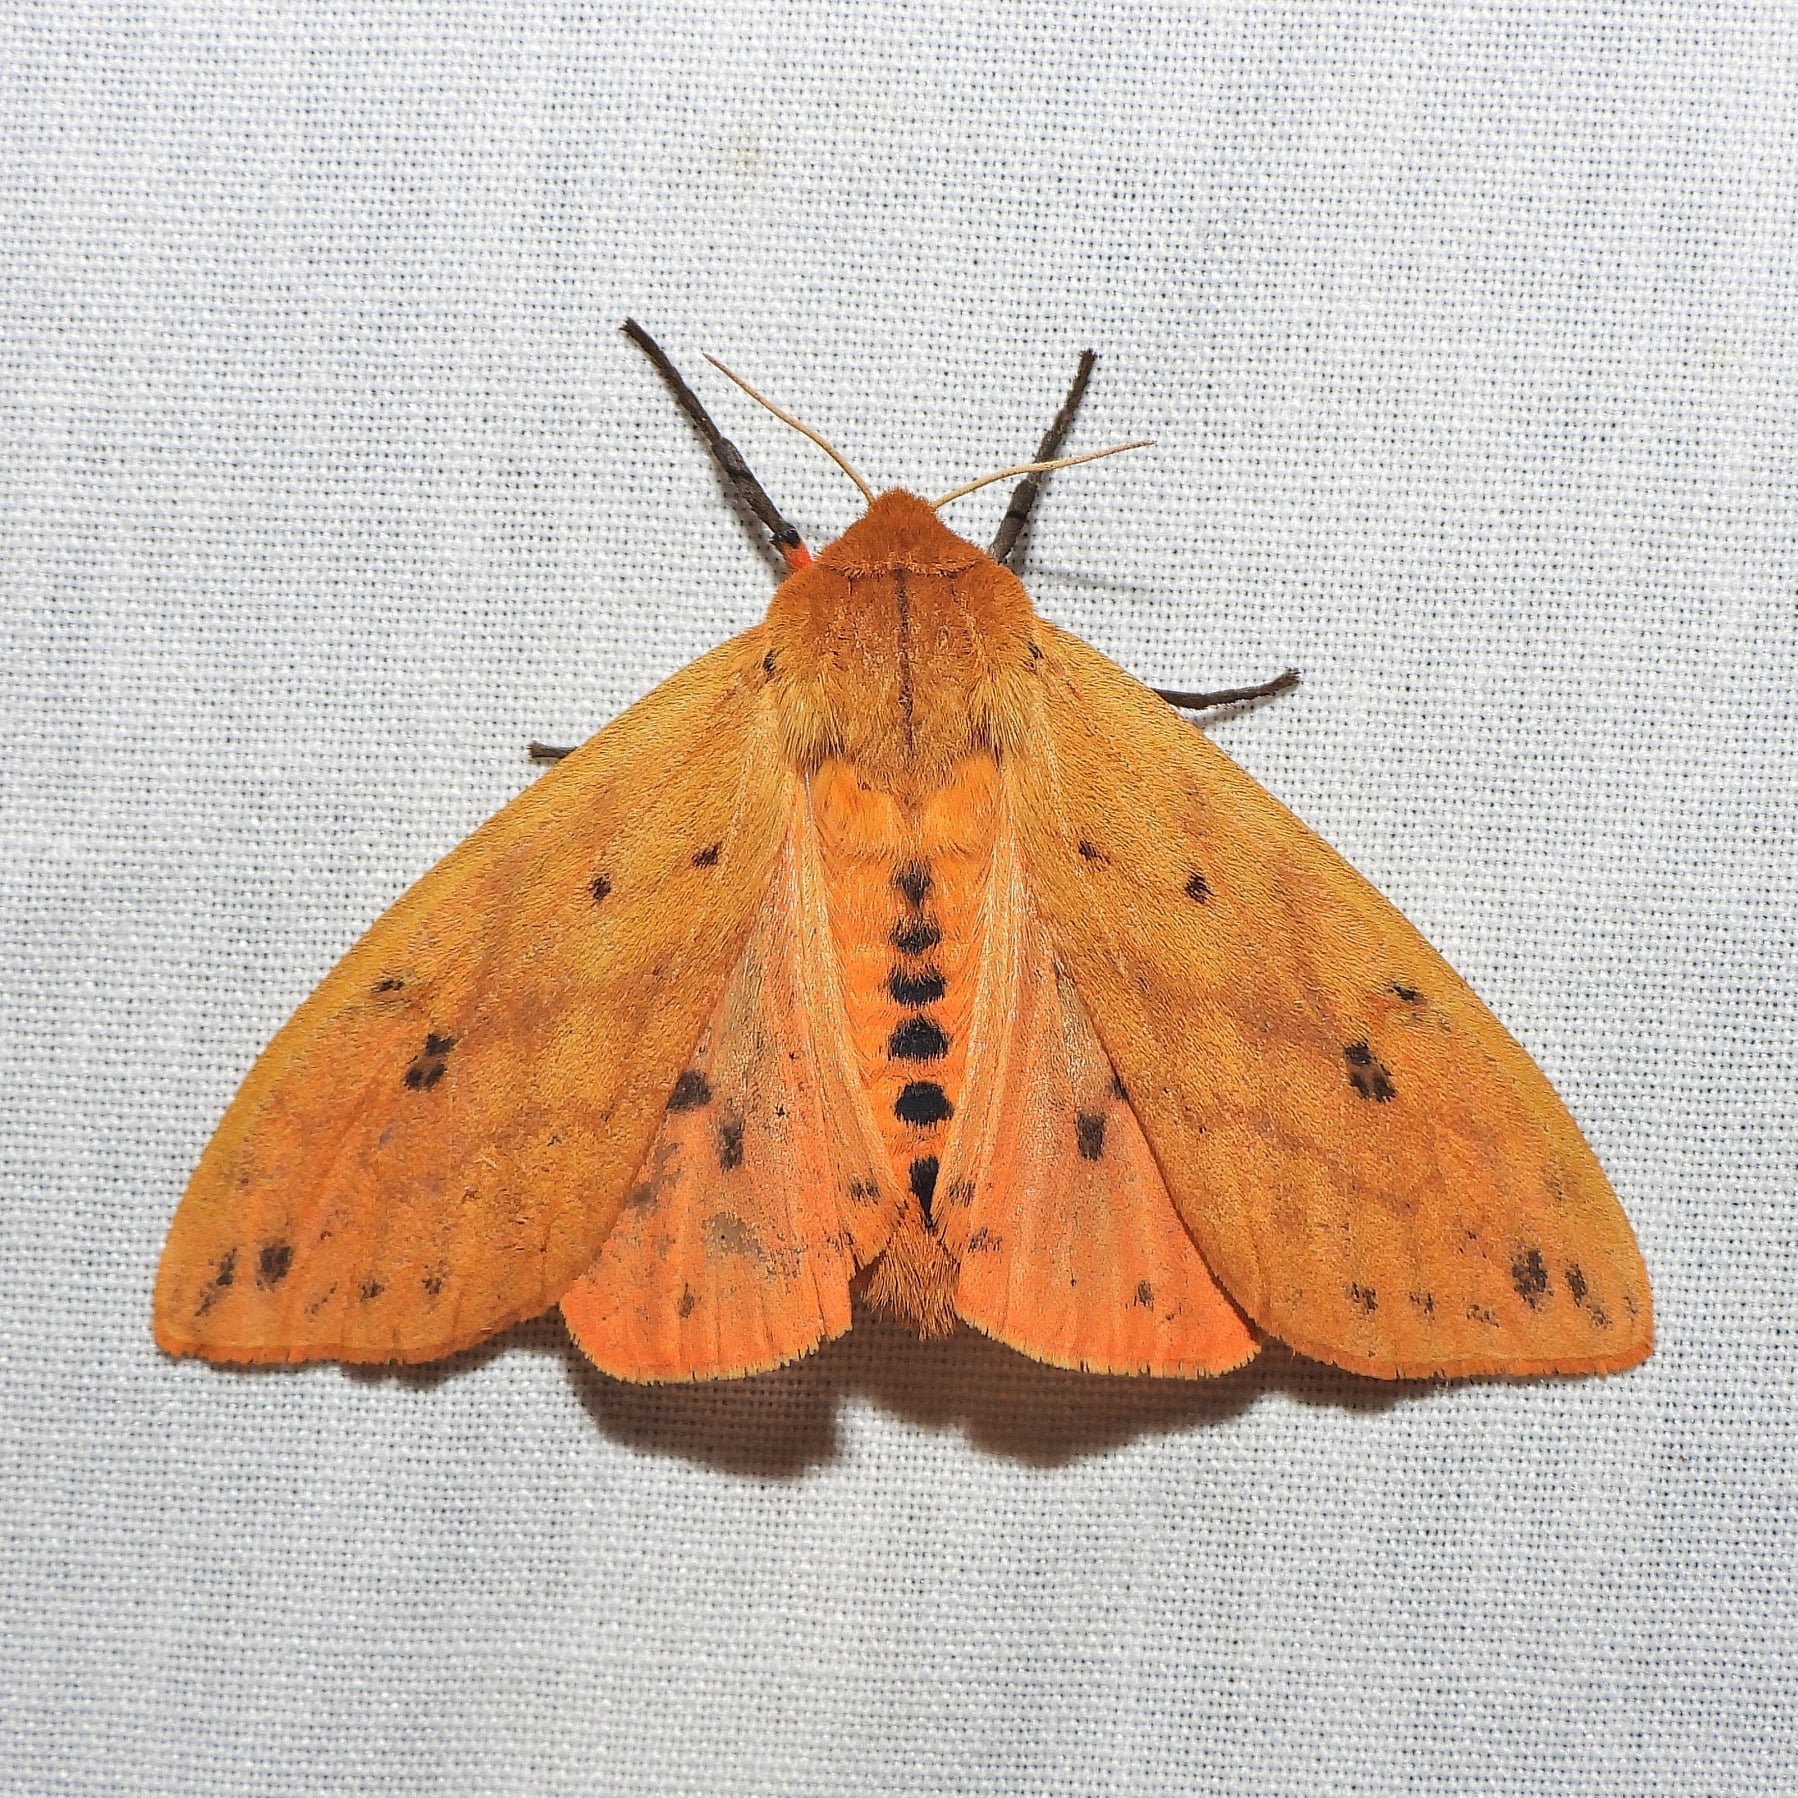 Isabella Tiger Moth.jpg